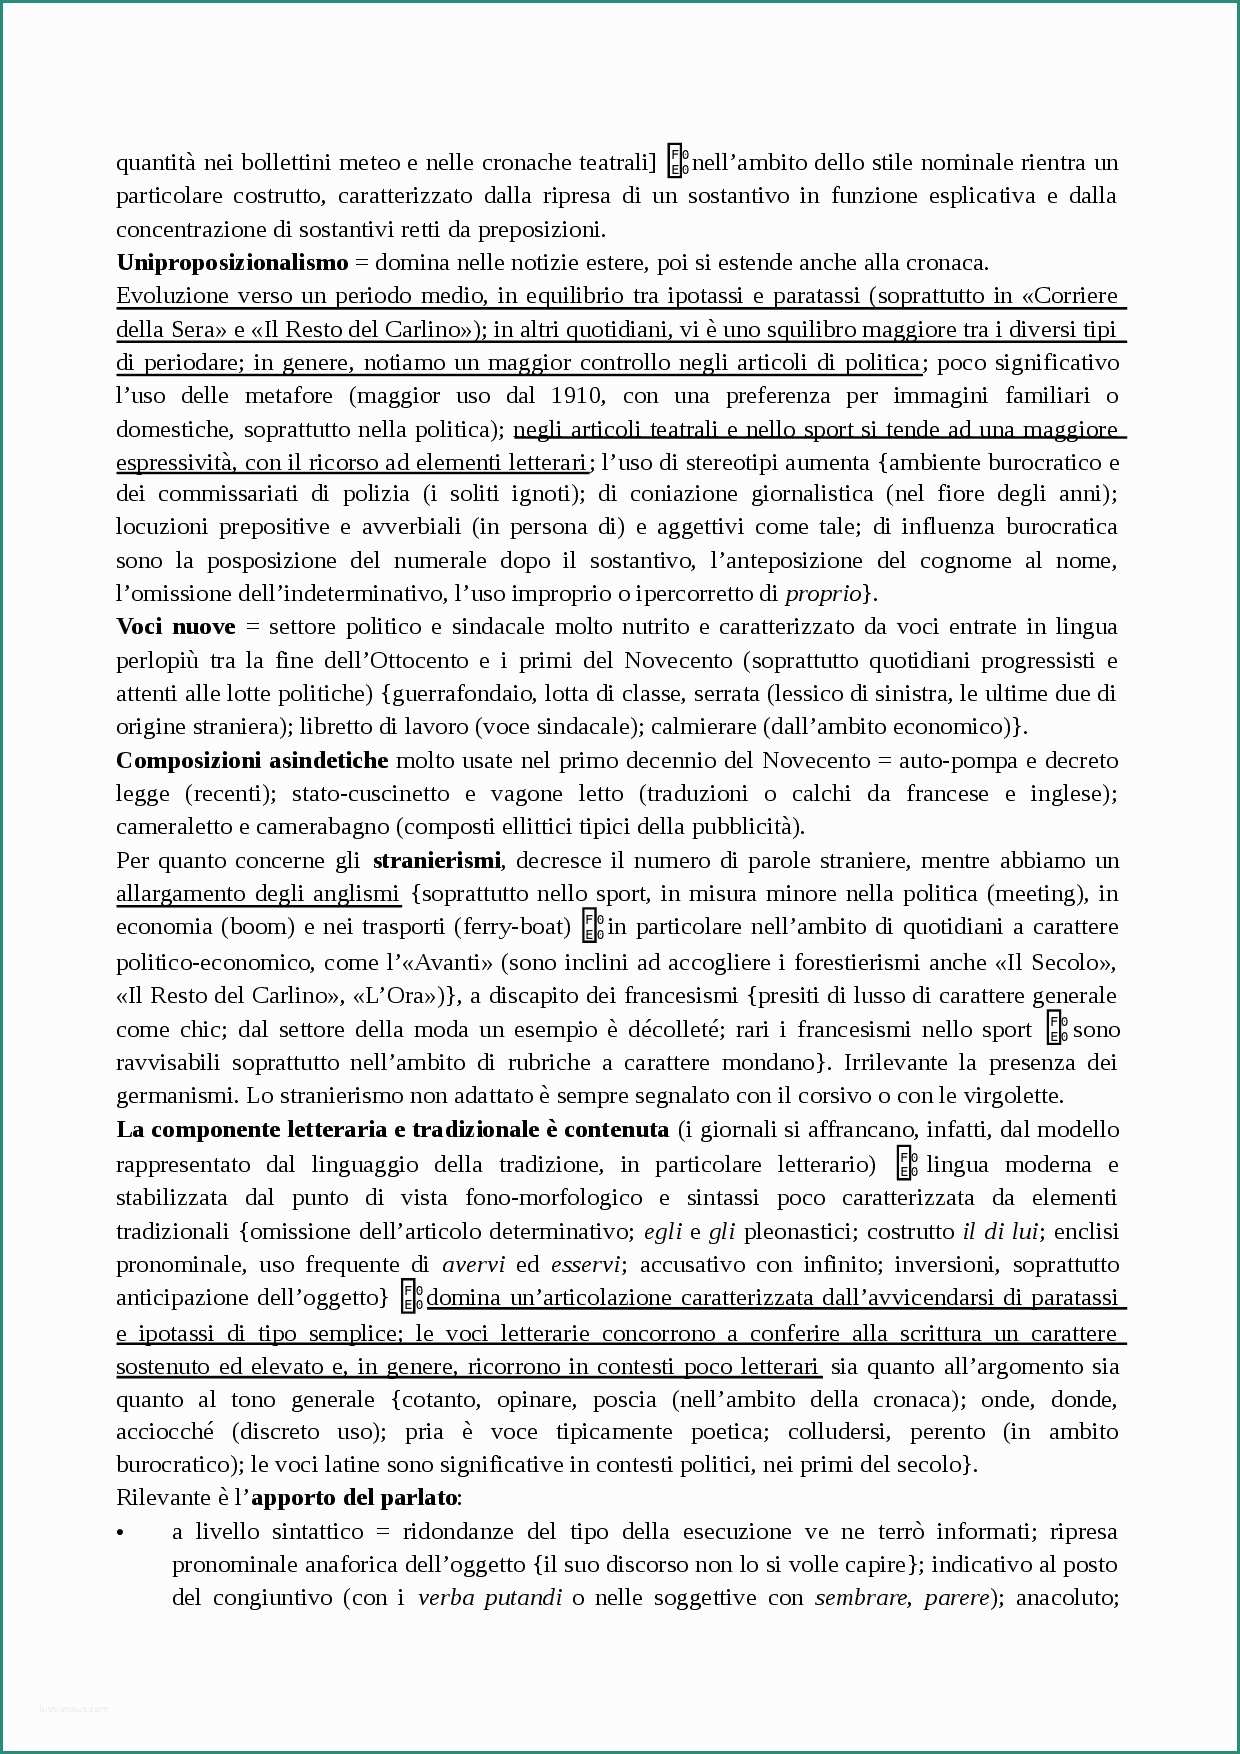 Articoli Indeterminativi In Francese E I Bonomi L Italiano Giornalistico Docsity